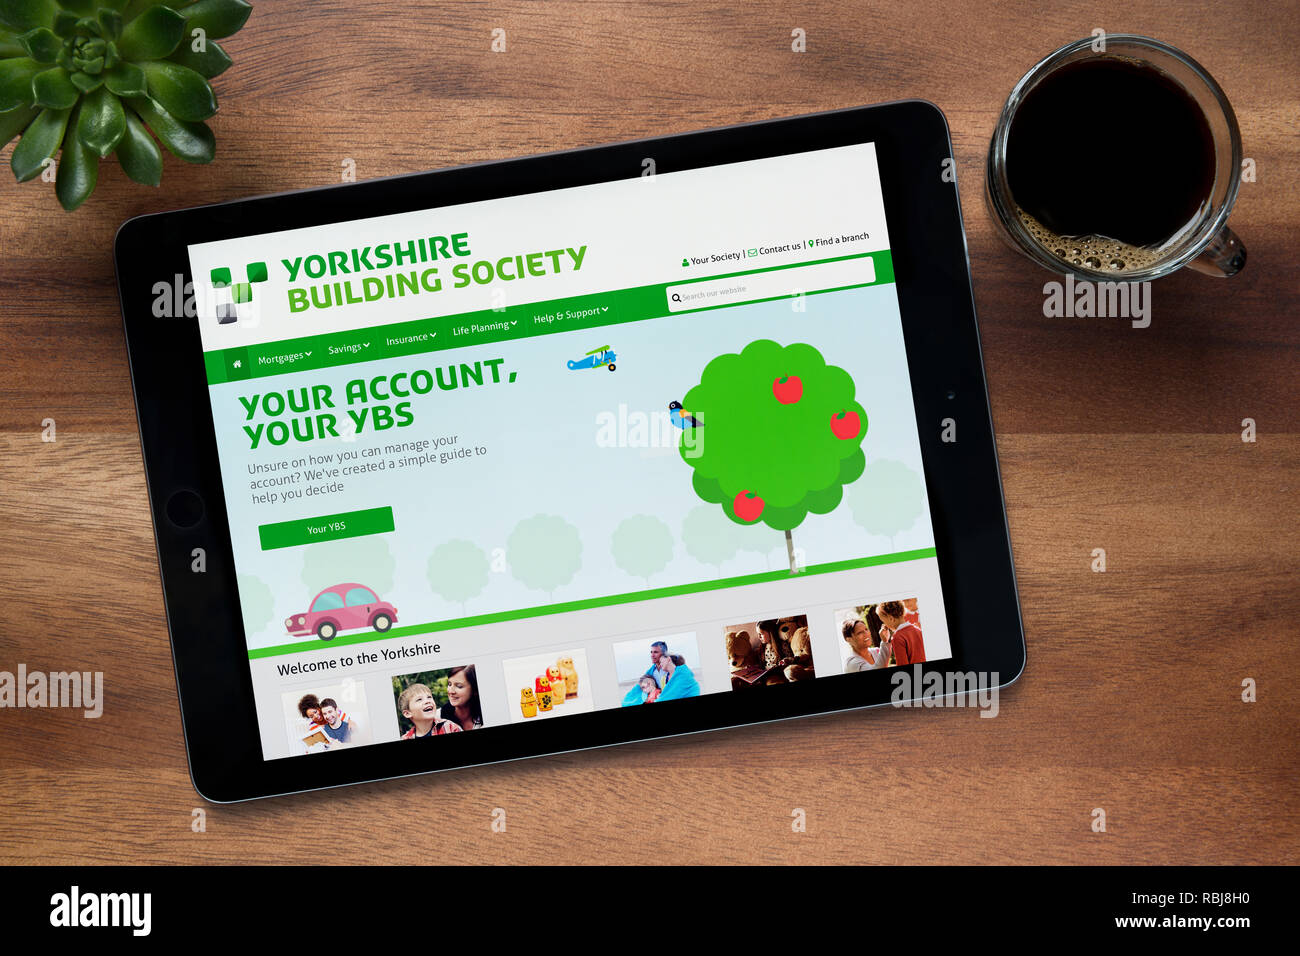 Le site internet de Yorkshire Building Society est vu sur un iPad tablet, reposant sur une table en bois (usage éditorial uniquement). Banque D'Images